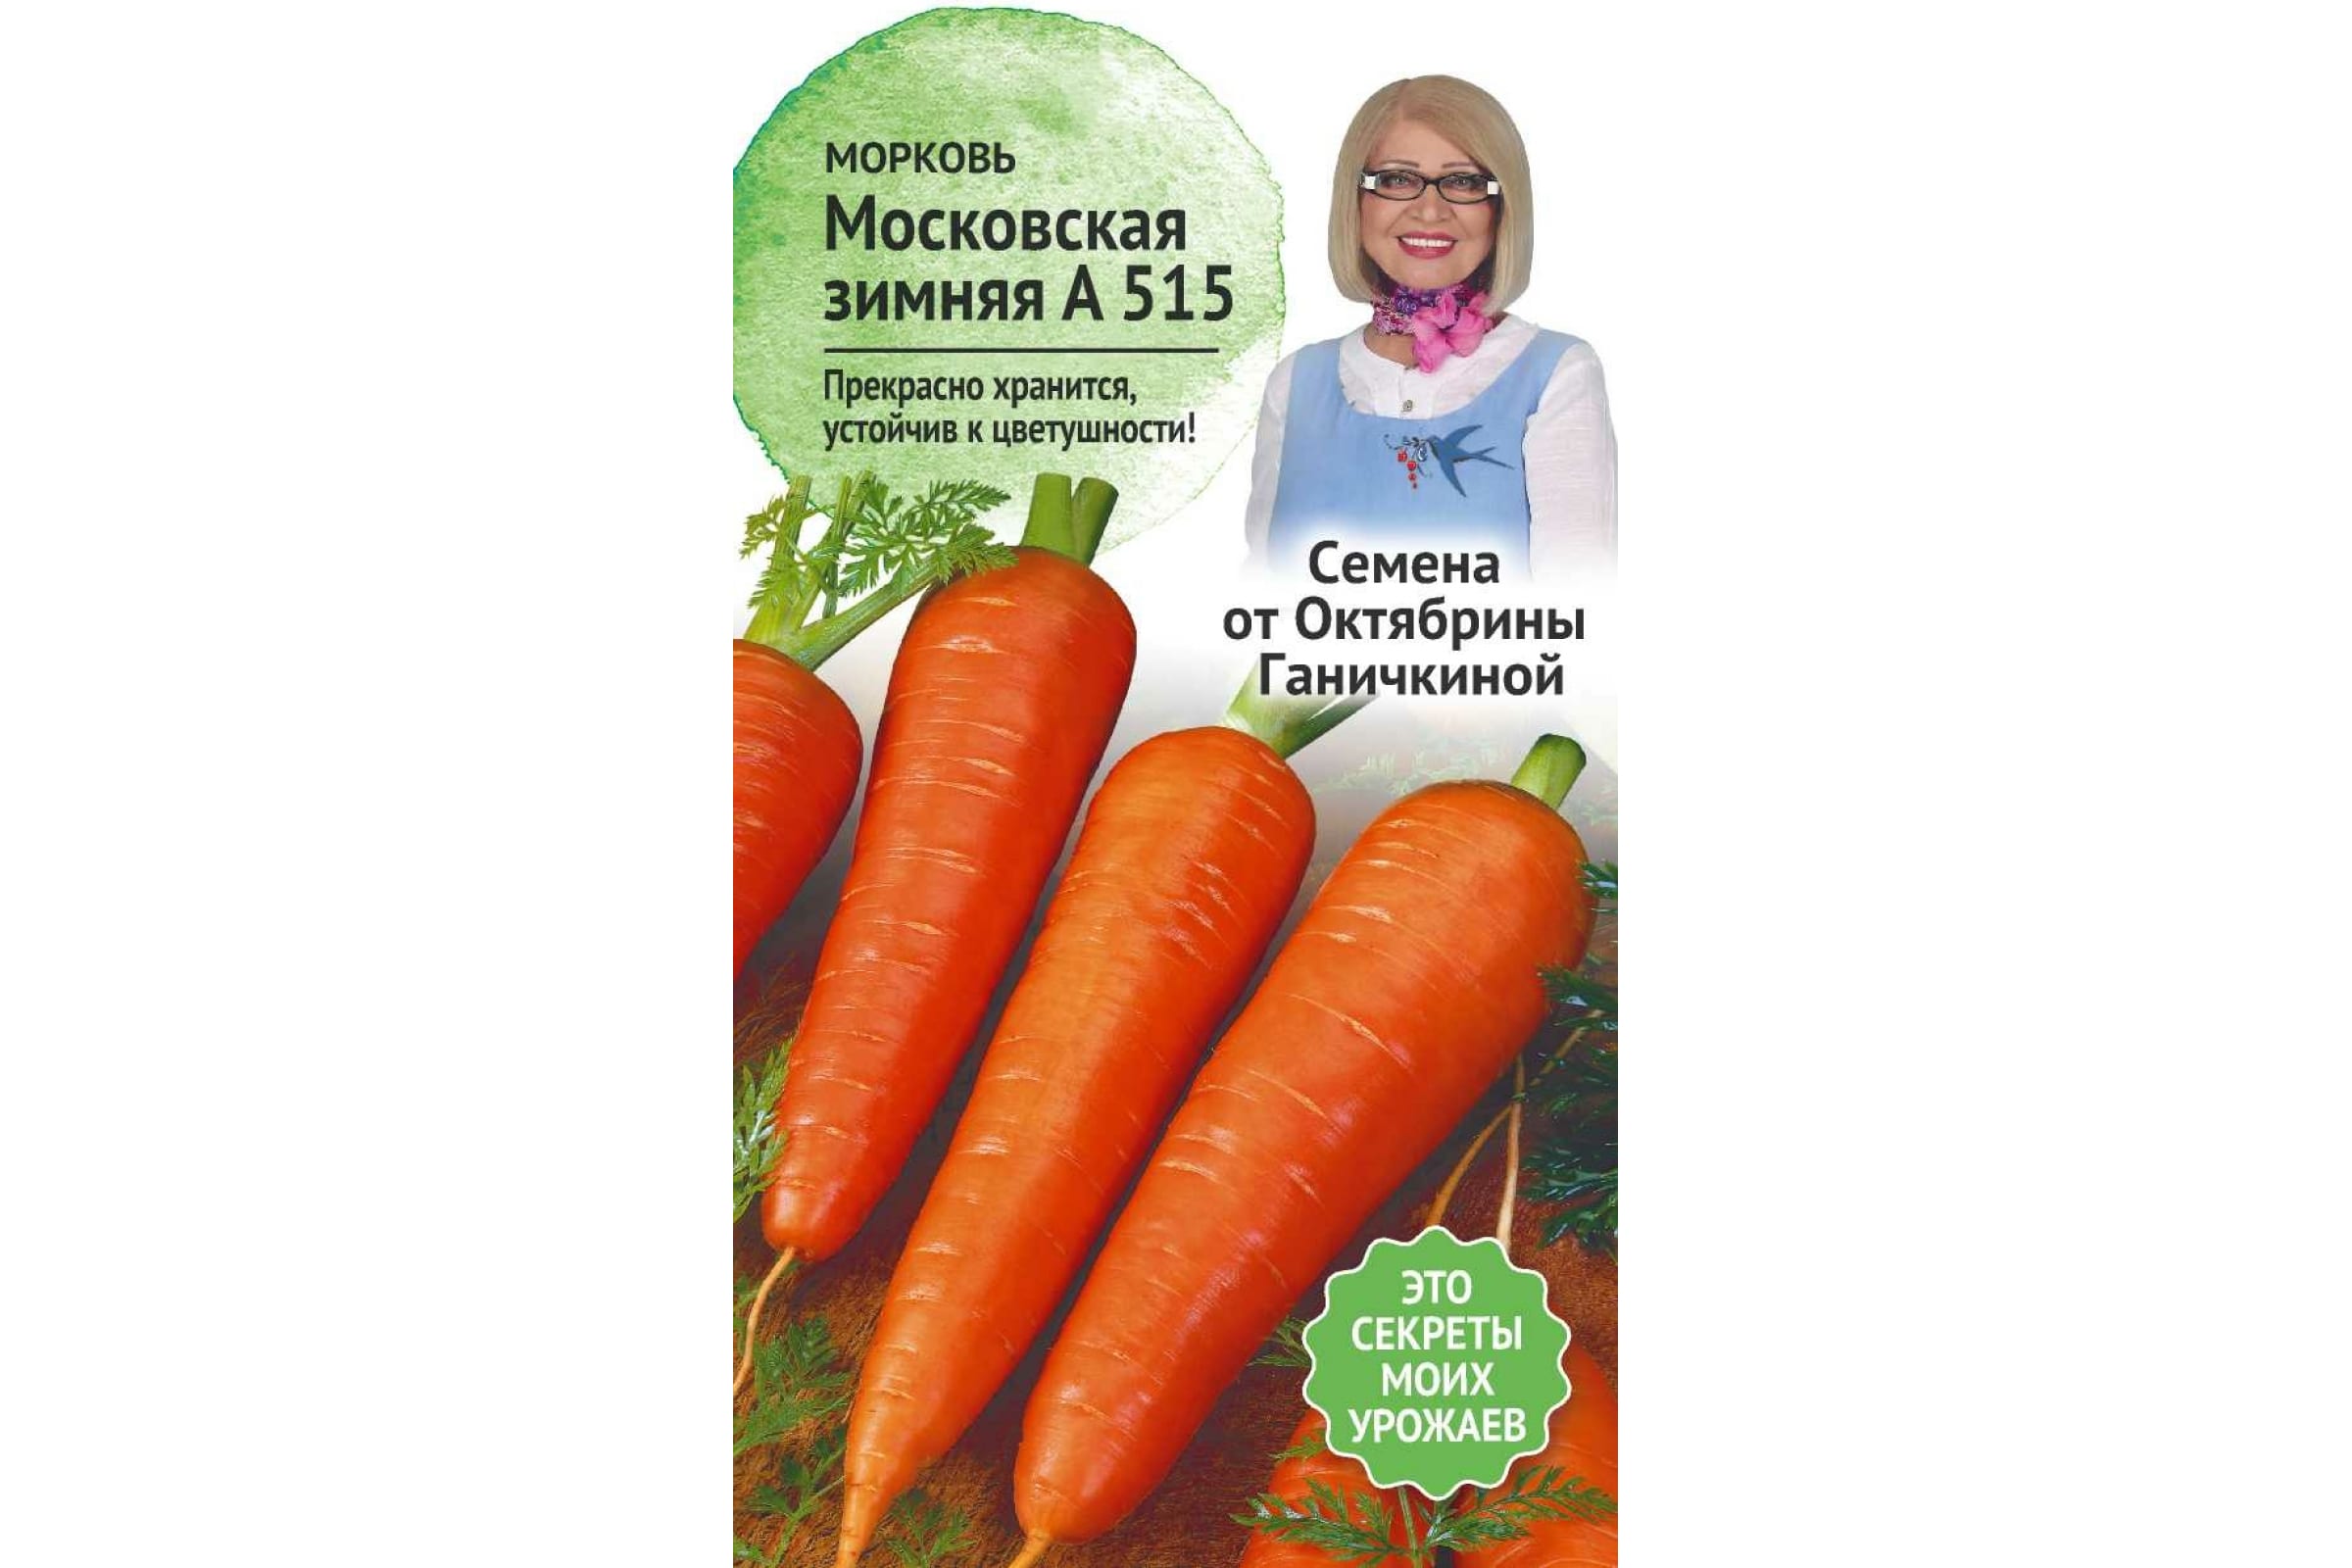 Семена морковь Семена от Октябрины Ганичкиной Московская зимняя А 515 1 уп.